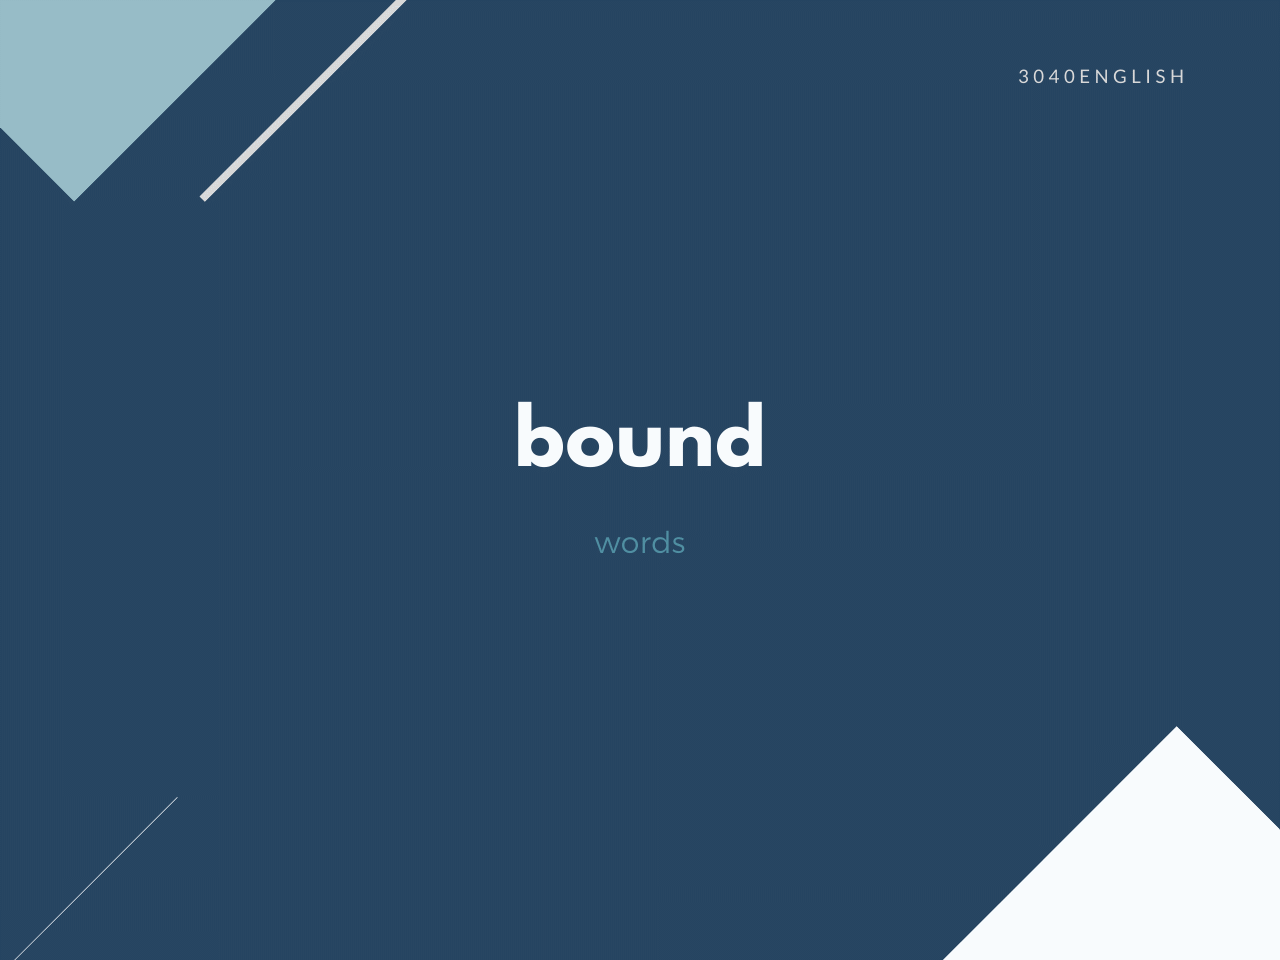 【バウンド】bound の意味と簡単な使い方【英語表現・例文あり】